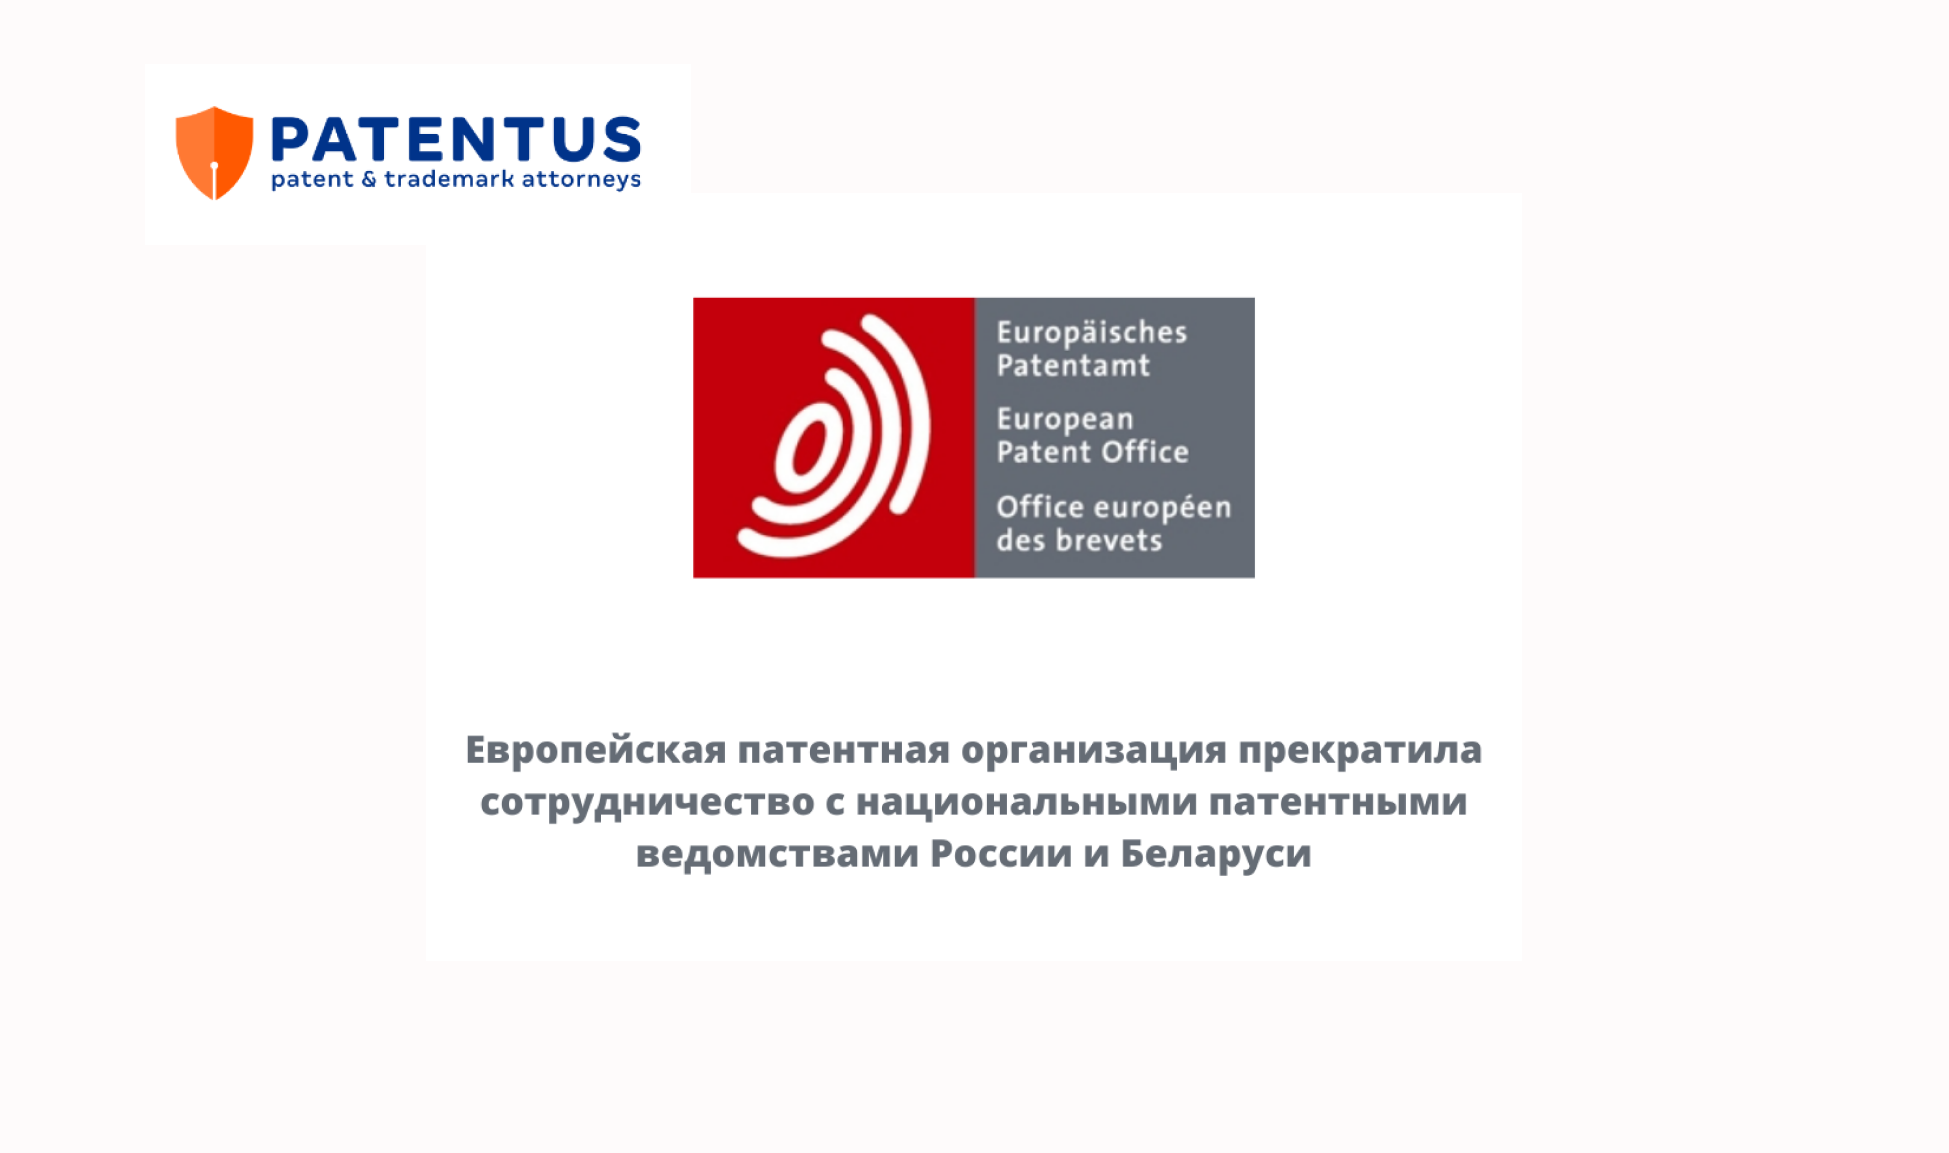 Европейская патентная организация прекратила сотрудничество с национальными патентными ведомствами России и Беларуси